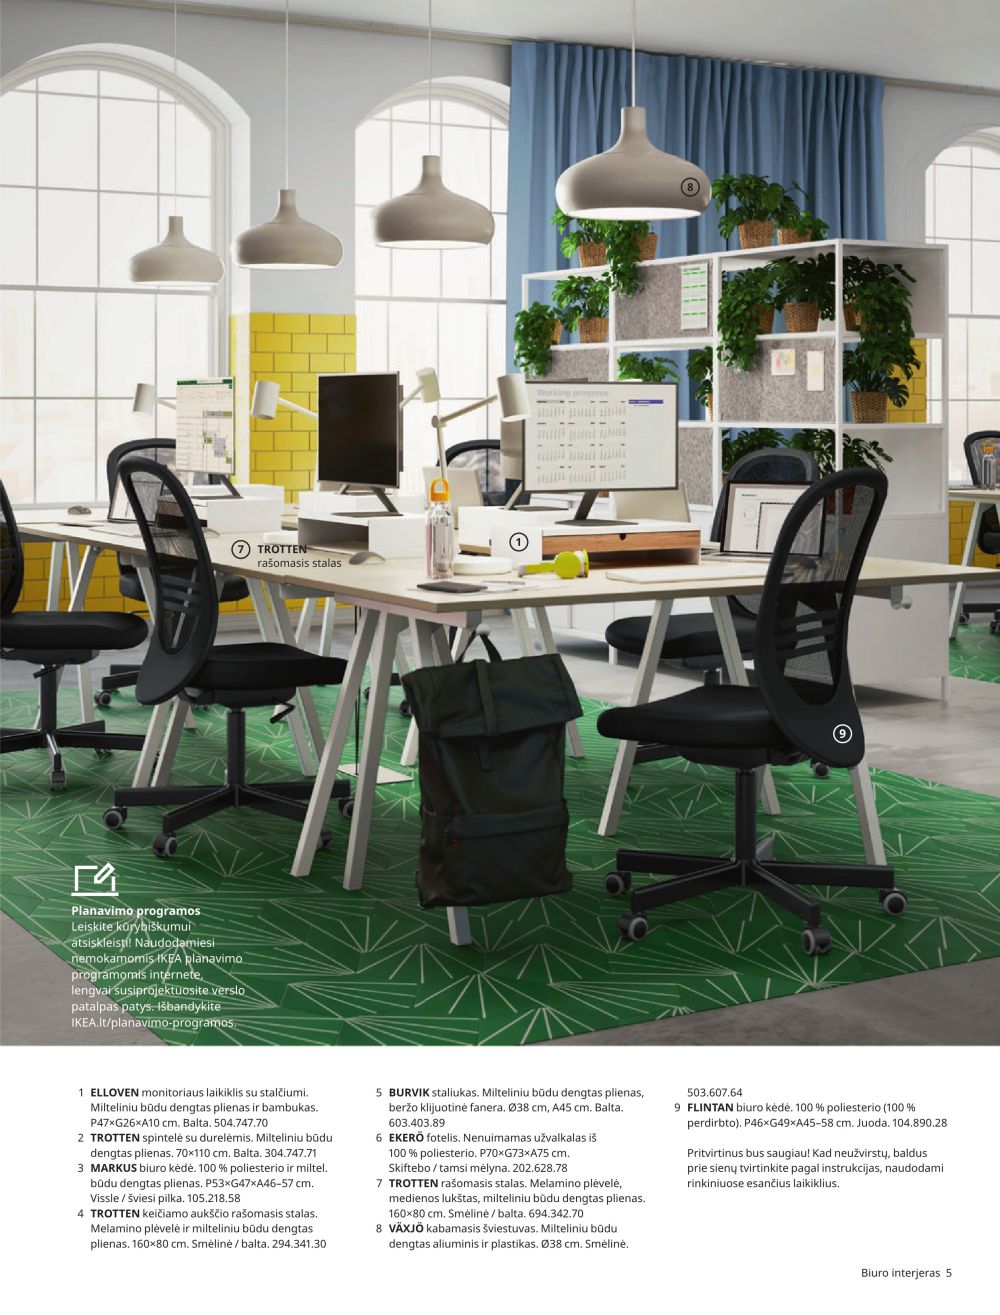 ikea - IKEA - Namai jūsų verslui 2023 - page: 5